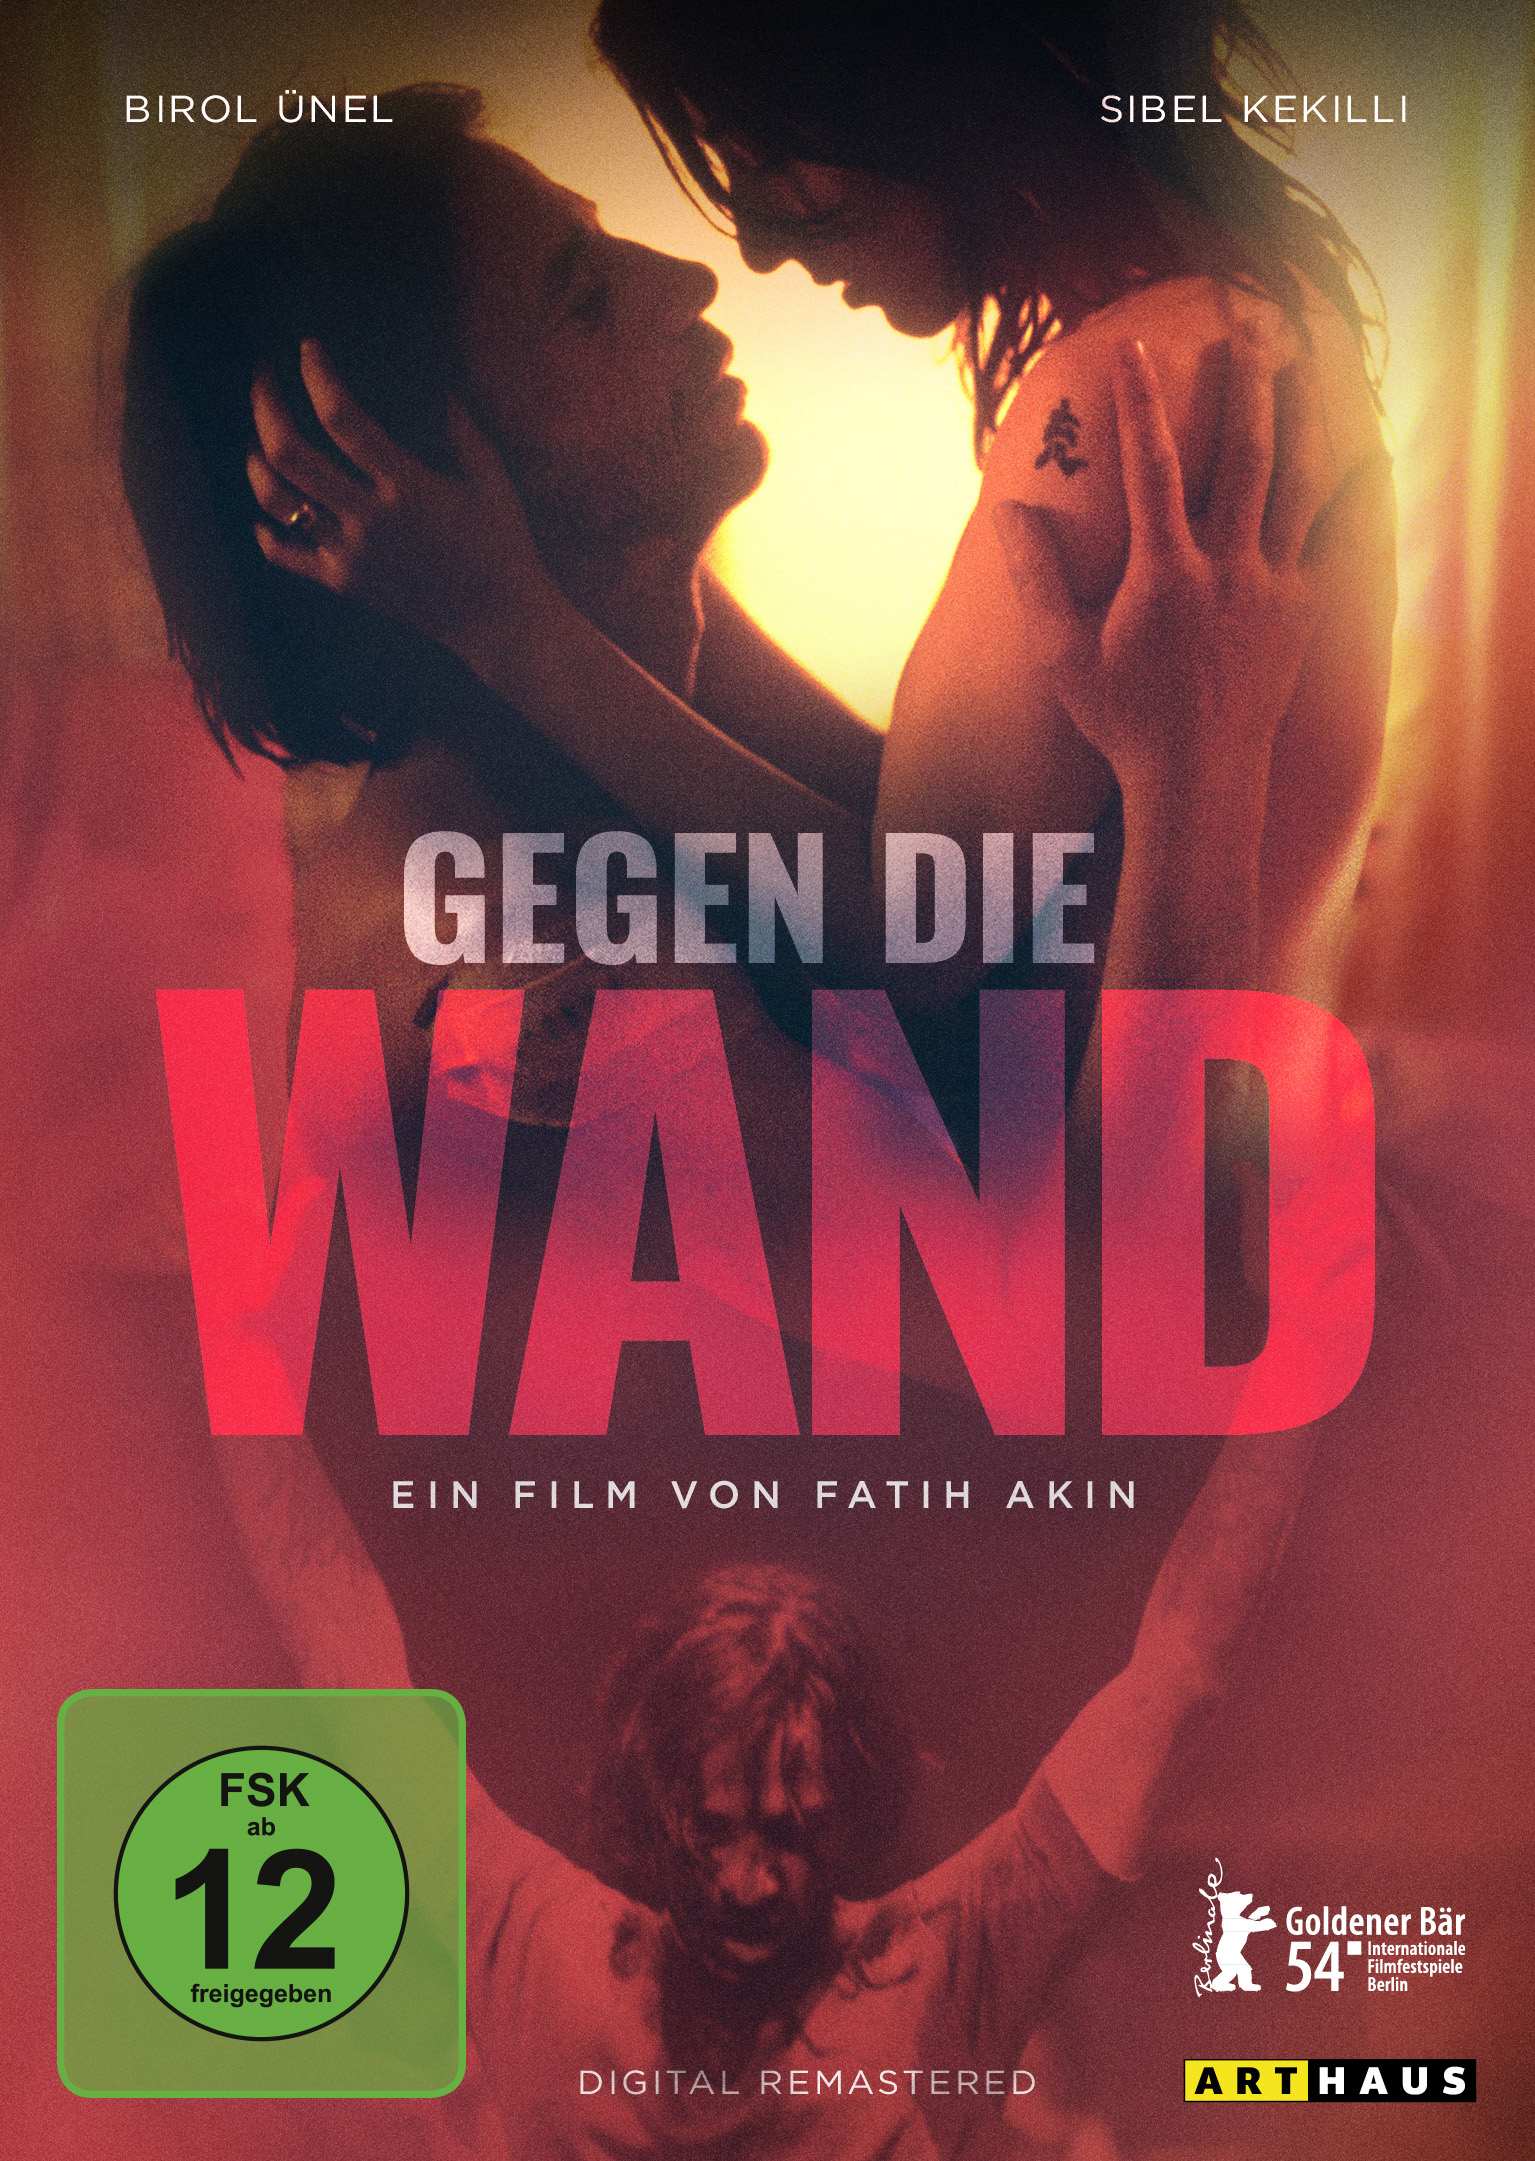 Film - Edition Gegen die deutscher Wand DVD